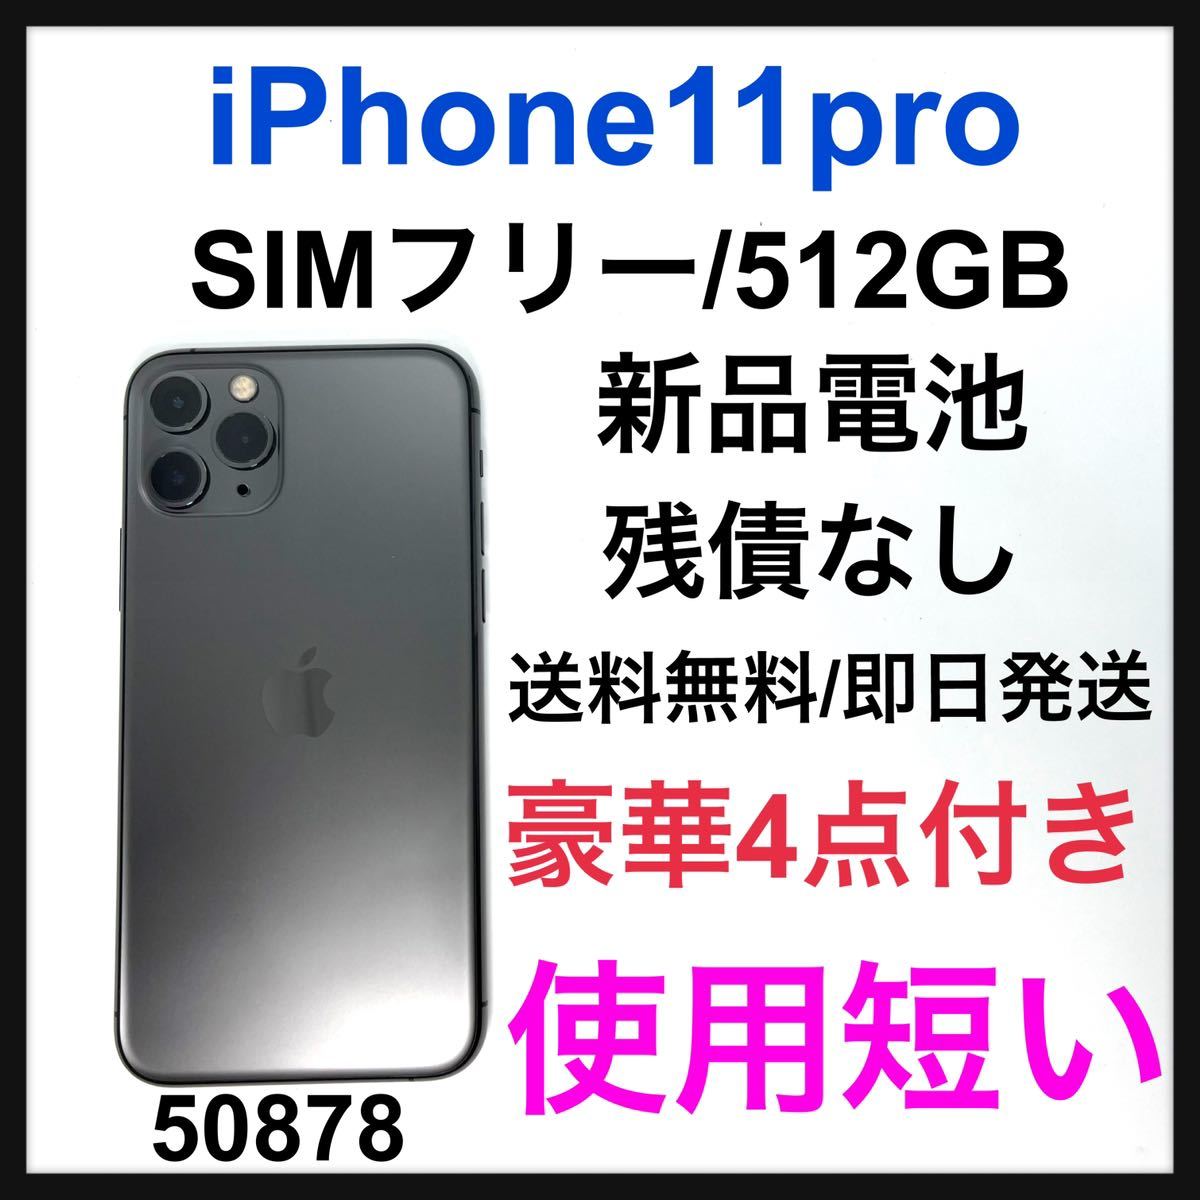 オマケ付き 新品 未使用 iPhone 11 Pro 512GB SIMフリー シルバー 格安